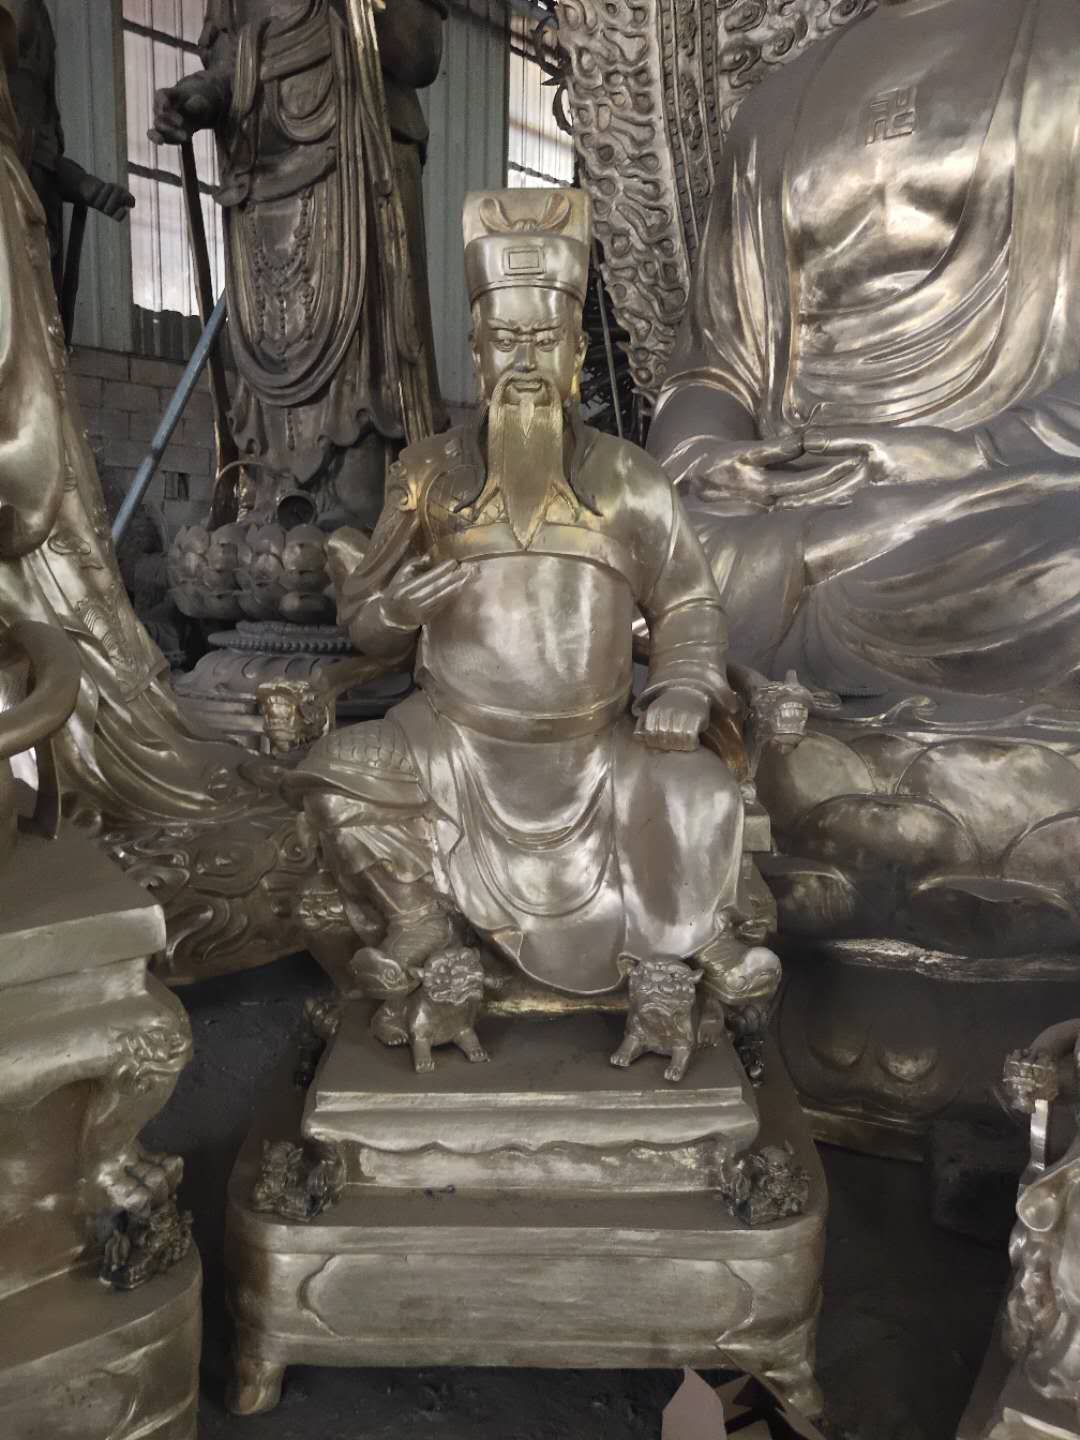 神像 温州慈宏法器供应玻璃钢土地公土地婆神像 道观铜雕神像 露天大型铜神像